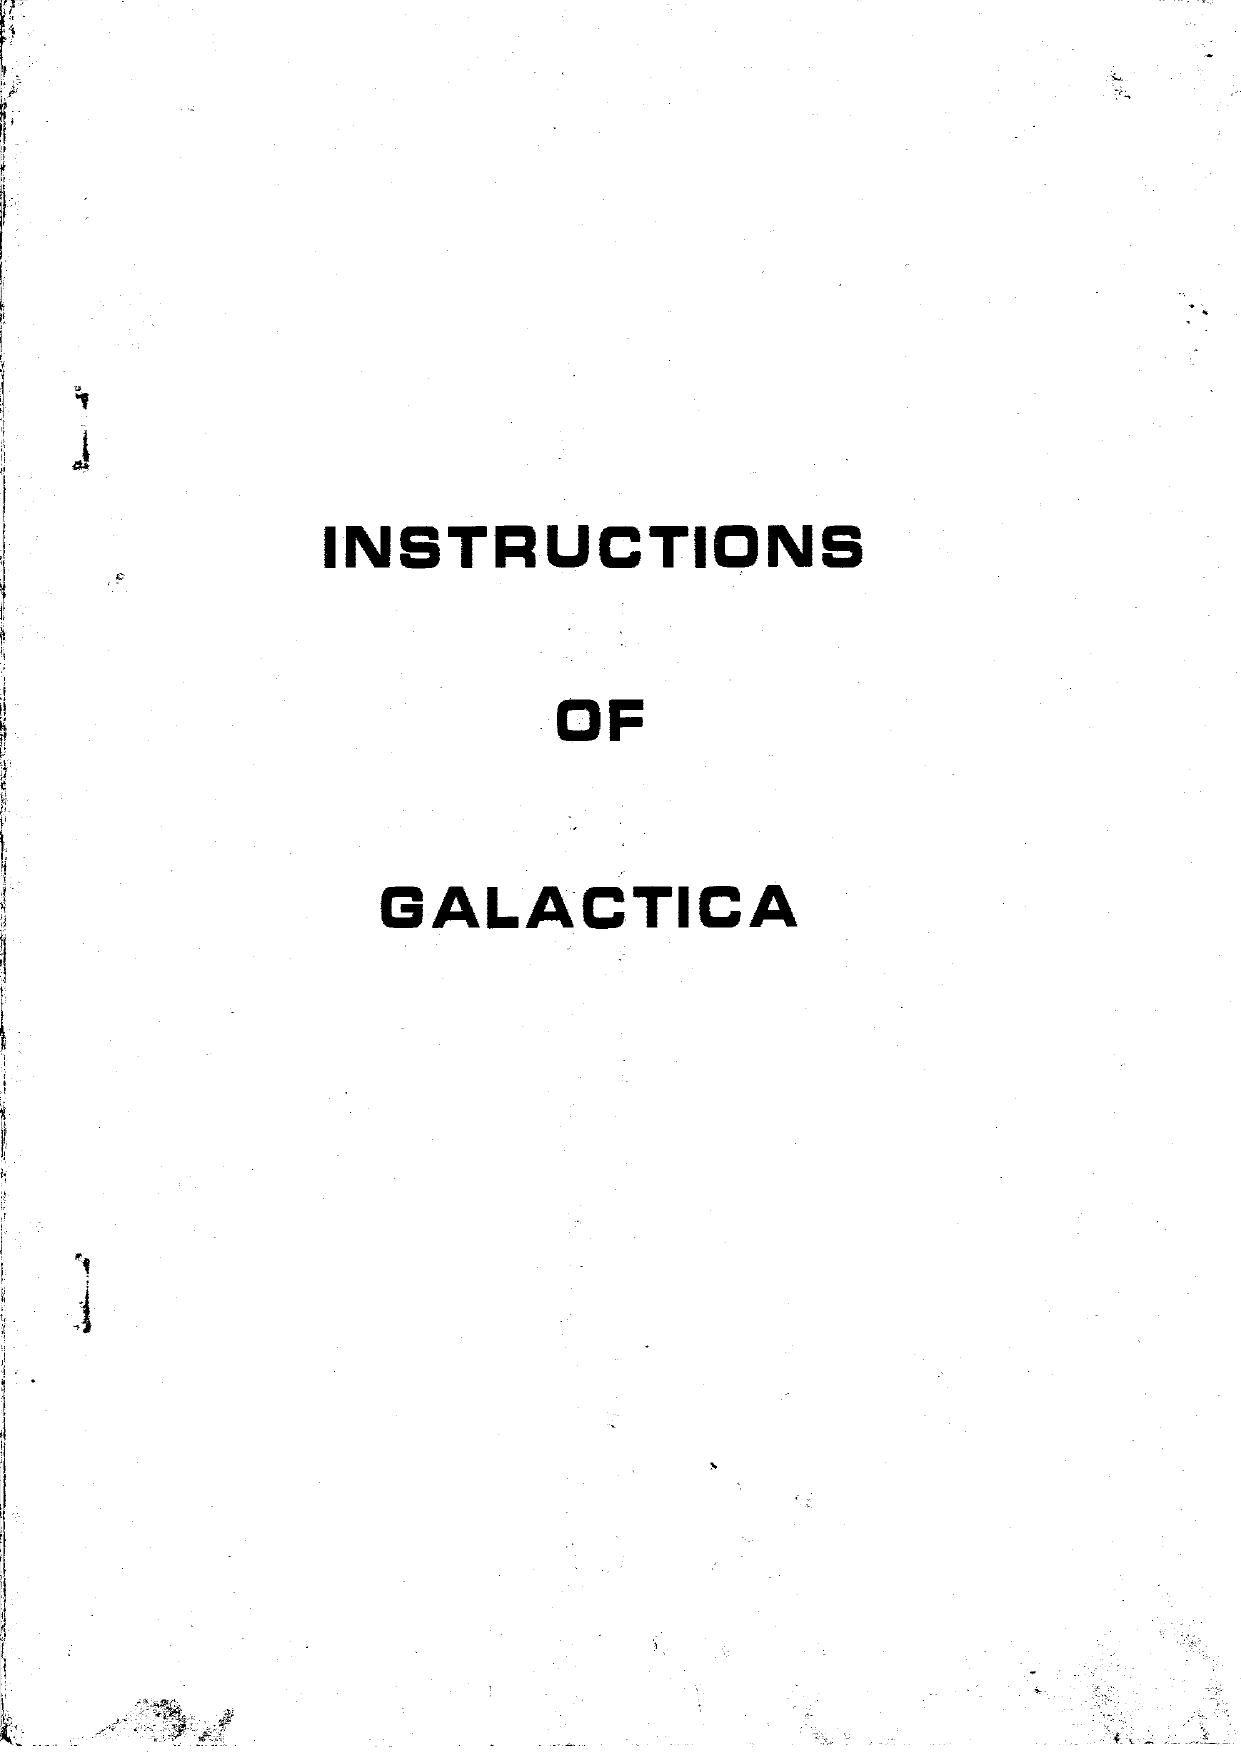 Galactica